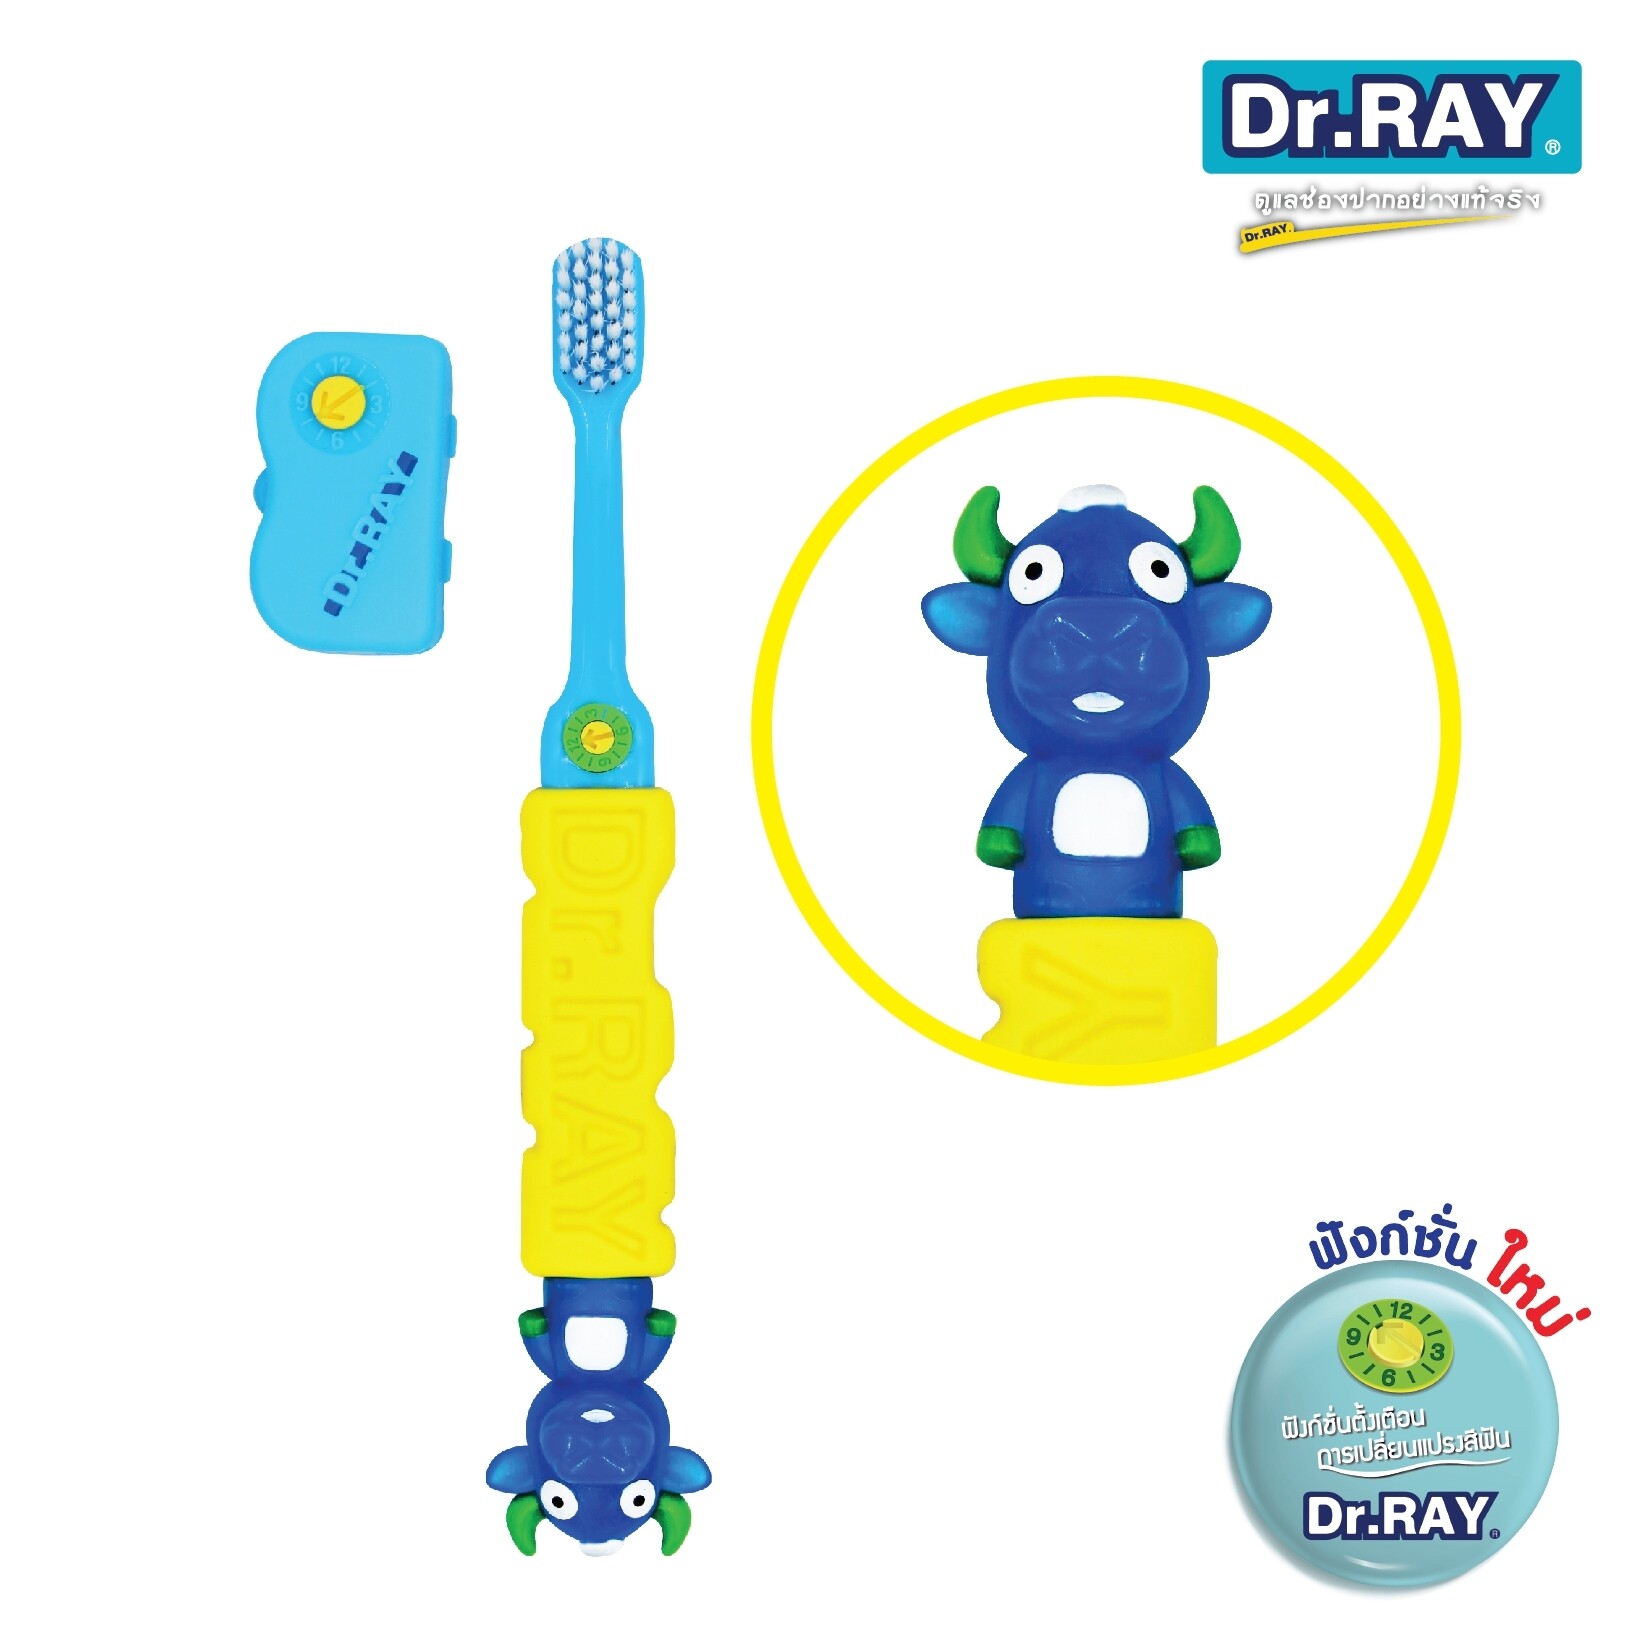 Dr.Ray แปรงสีฟันเด็ก (ขนนุ่ม) แปรงสีฟัน แปรงสีฟันขนนุ่ม แปรงสีฟันสำหรับเด็กเล็ก ขนนุ่มมาก D2 (แพ็ค 1 ด้าม) แปรงสีฟัน Kids toothbrush แปรงสีฟันเด็กสำหรับเด็ก สำหรับเด็ก 3-12ขวบ แปรงสีฟันเด็กขนนุ่ม ขนนุ่มมาก แปรงสีฟันเด็ก ดอกเตอร์ เรย์ รุ่น